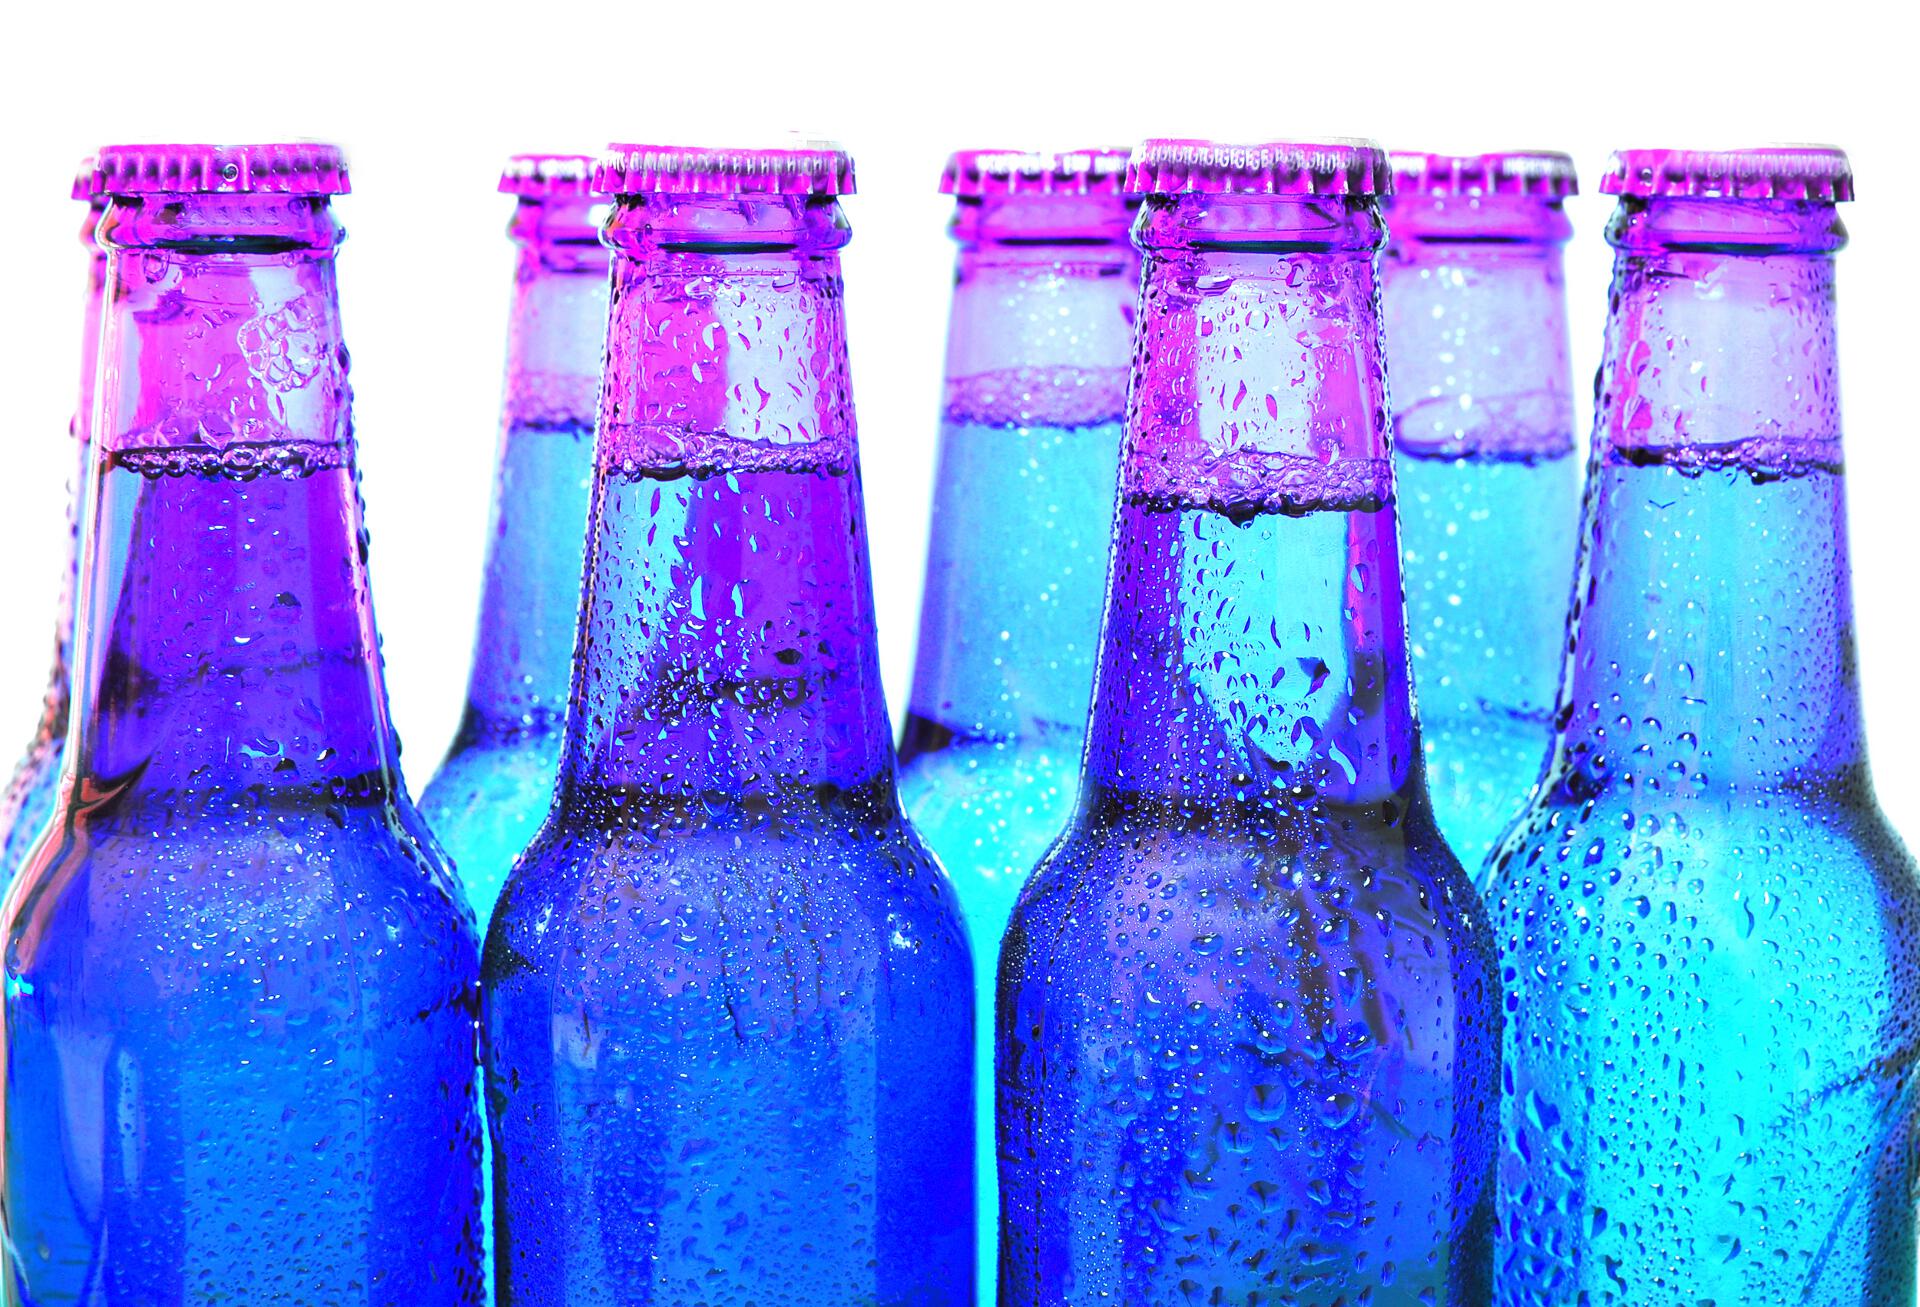 Kaltgetränke, blaue Glasflaschen, Limonade